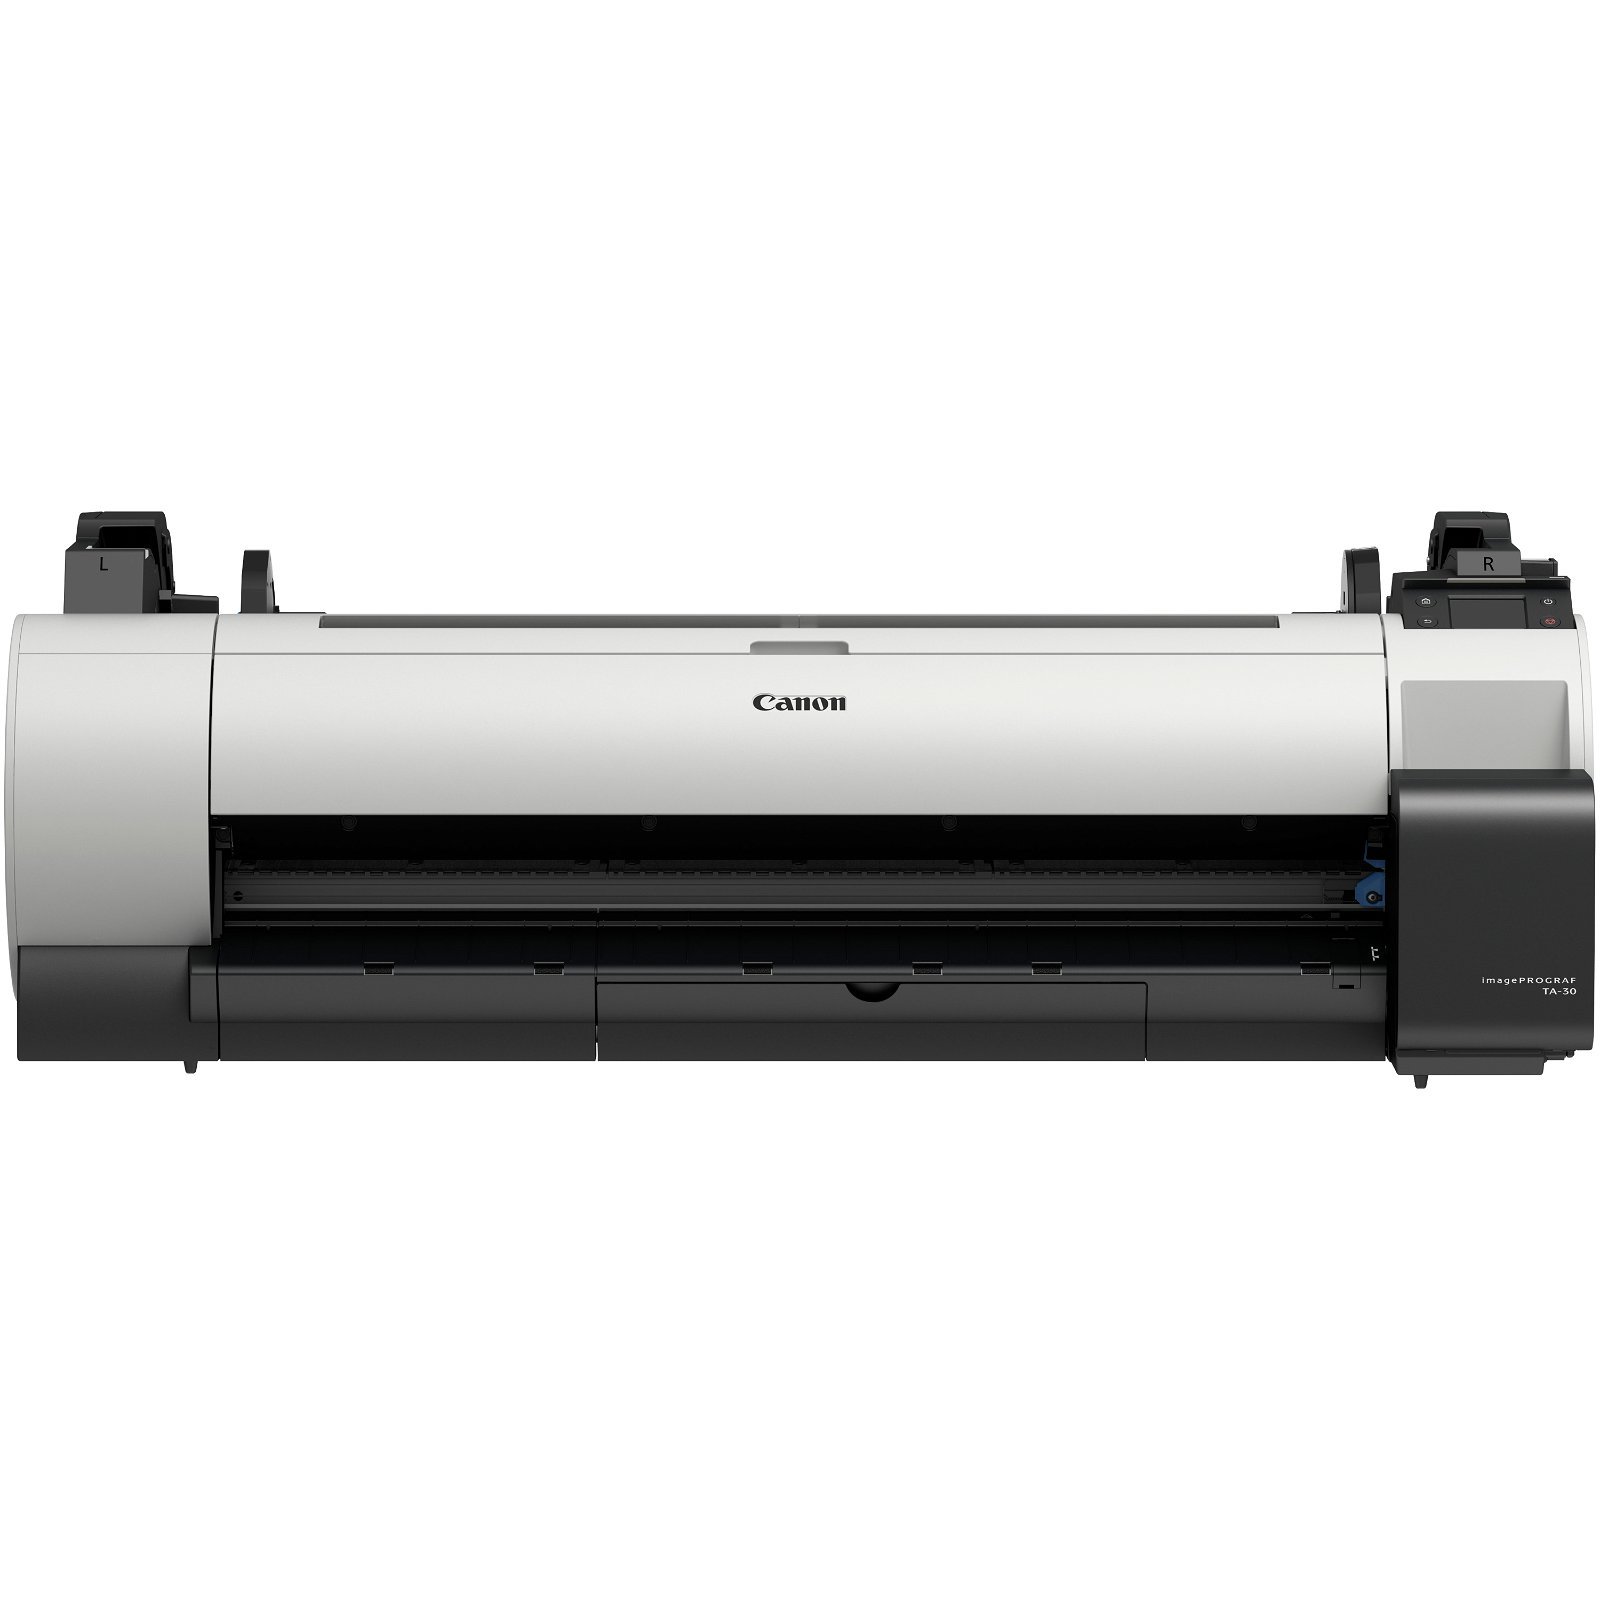 Canon TA-30 printer